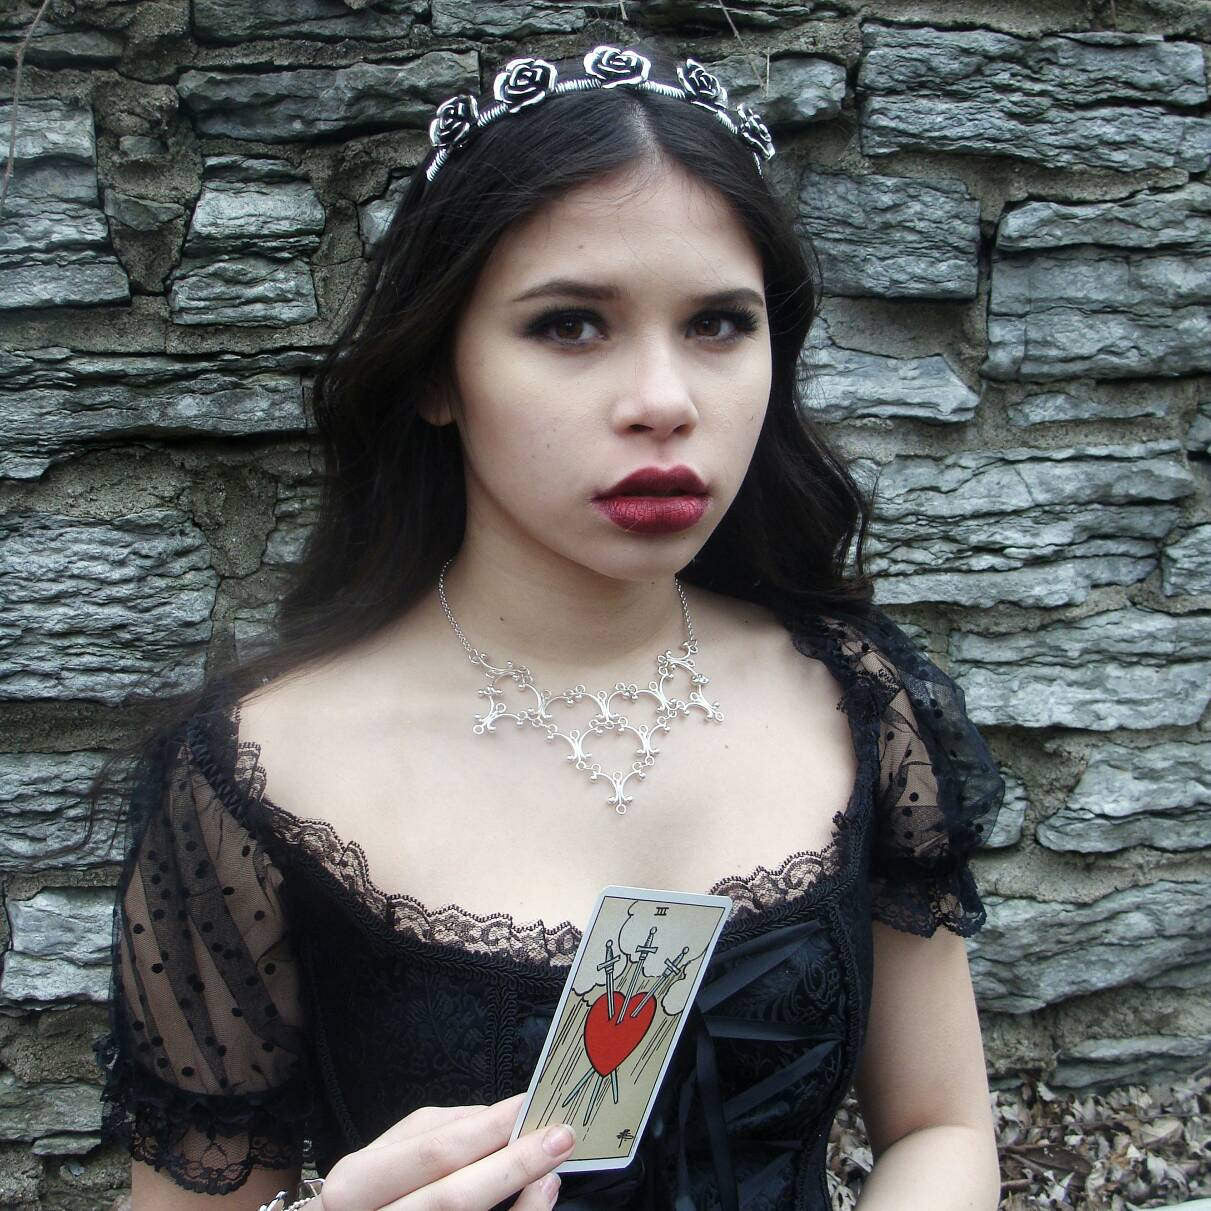 Silver Gothic Necklace - Neo Victorian Goth Jewelry - Ren Faire - Handfasting - Queen Costume - Gothic Lolita - Handmade Statement Necklace - DRAVYNMOOR